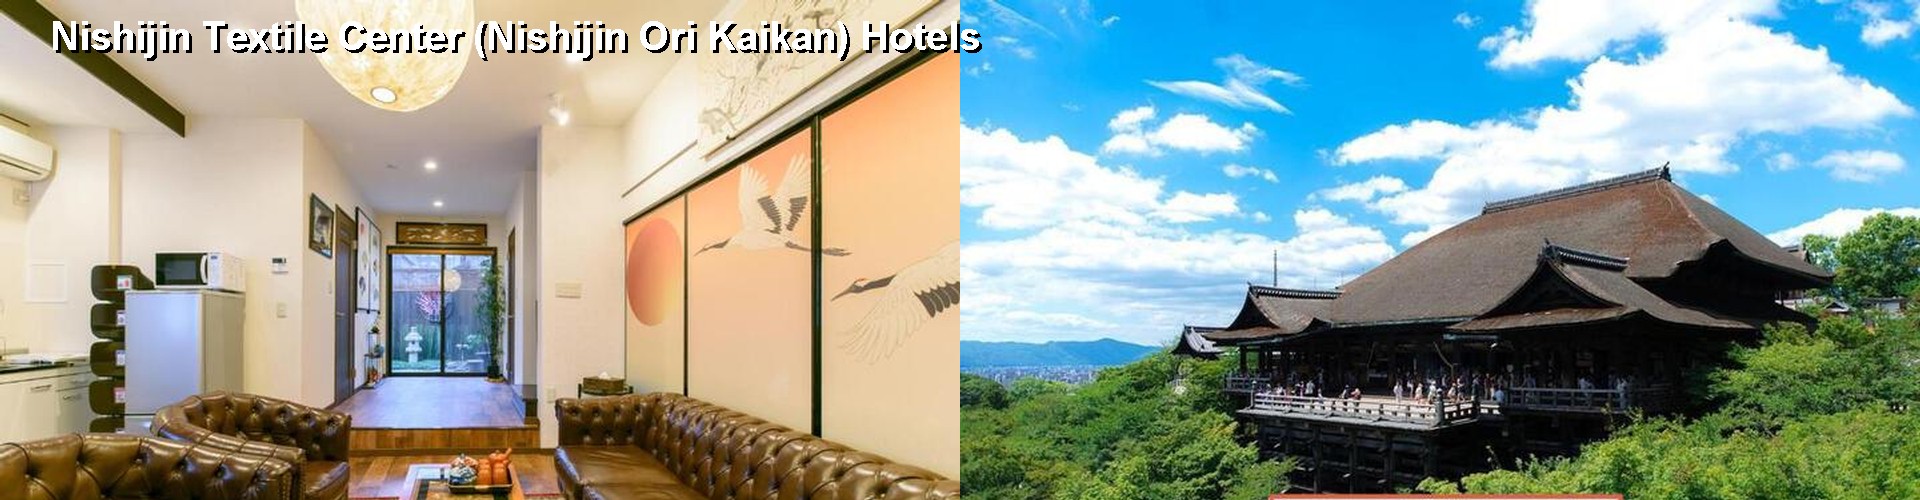 5 Best Hotels near Nishijin Textile Center (Nishijin Ori Kaikan)